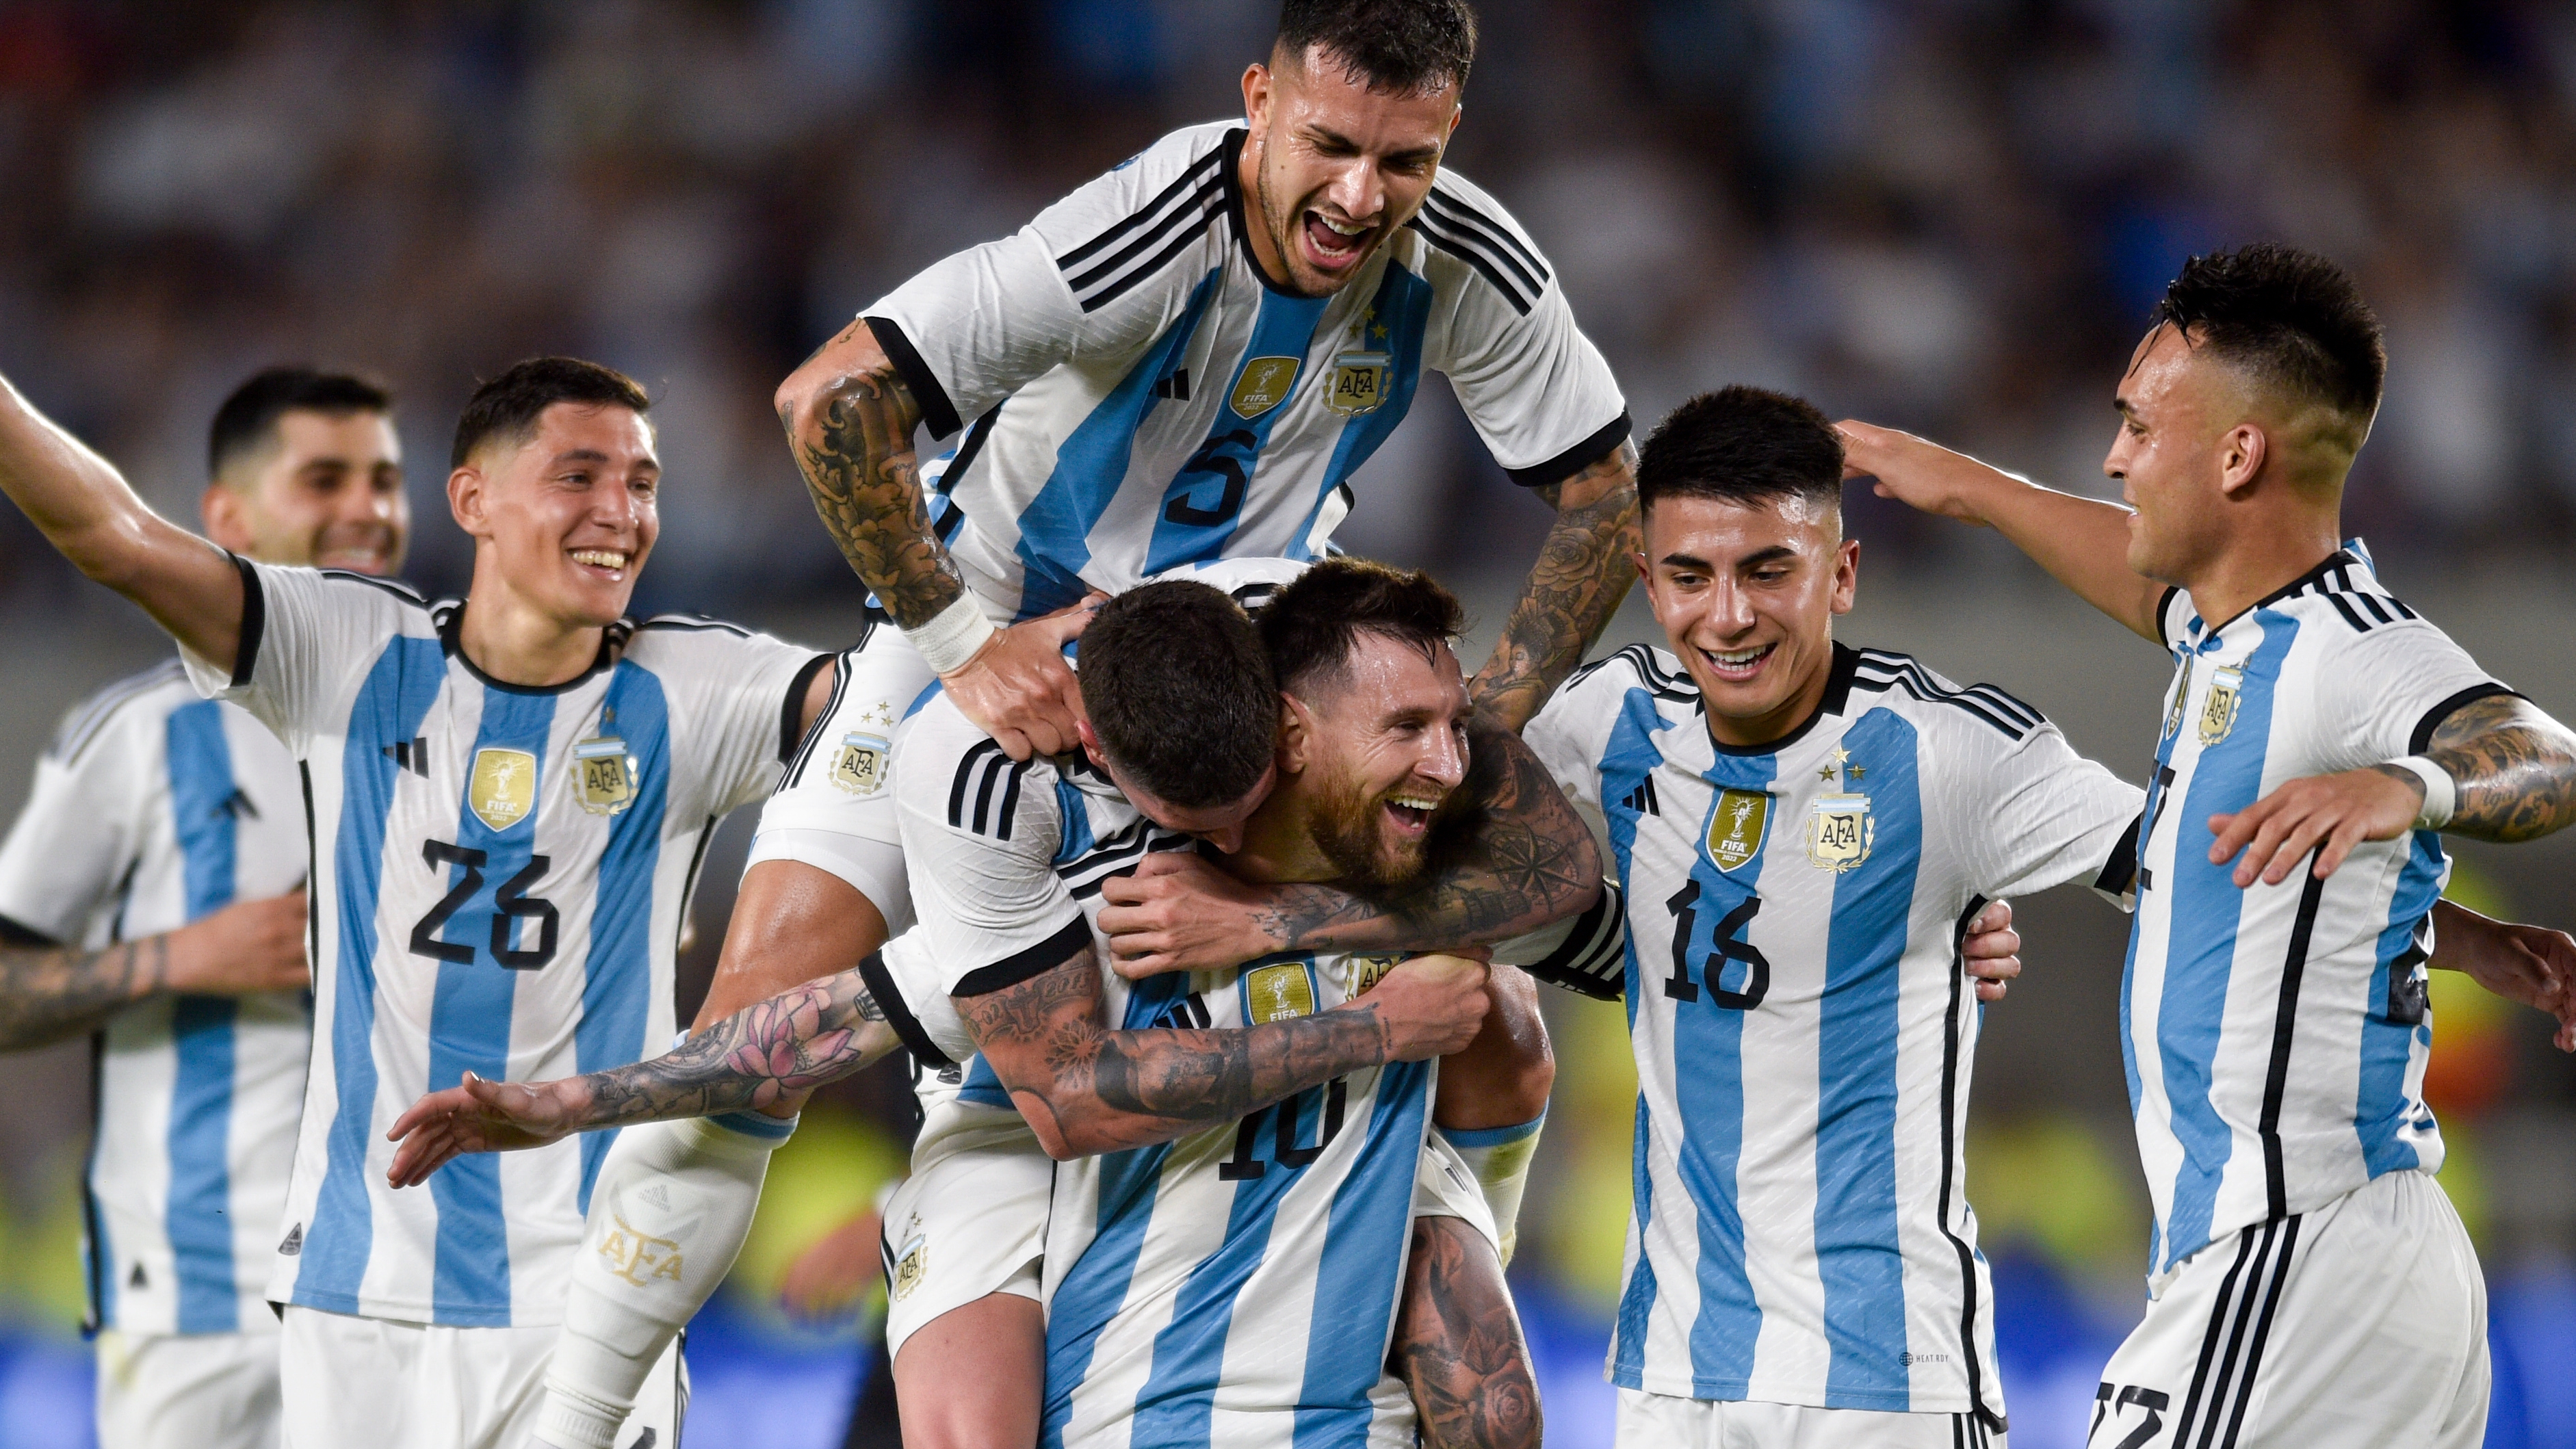 Lionel Messi (10), de Argentina, celebra con sus compañeros de la selección albiceleste, después de anotar el segundo gol de su equipo en contra de Panamá, durante el partido amistoso, en Buenos Aires, Argentina, el jueves 23 de marzo de 2023. (AP Foto/Gustavo Garello)